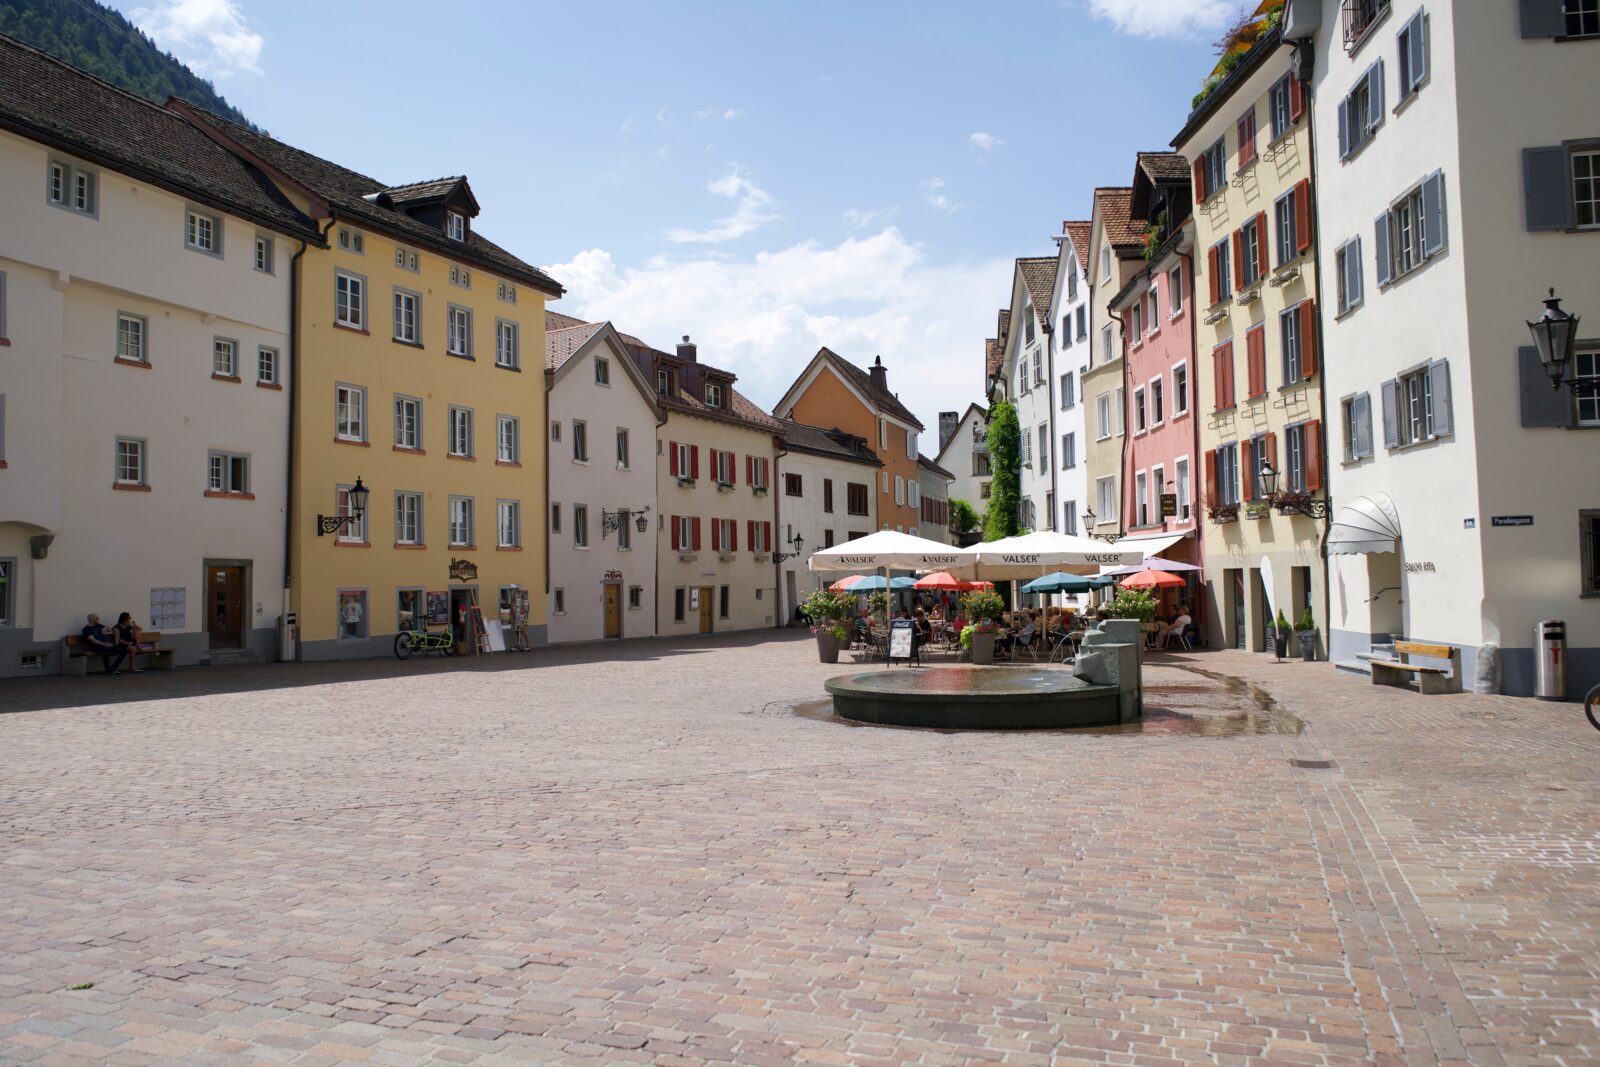 Altstadt Chur laurence ziegler